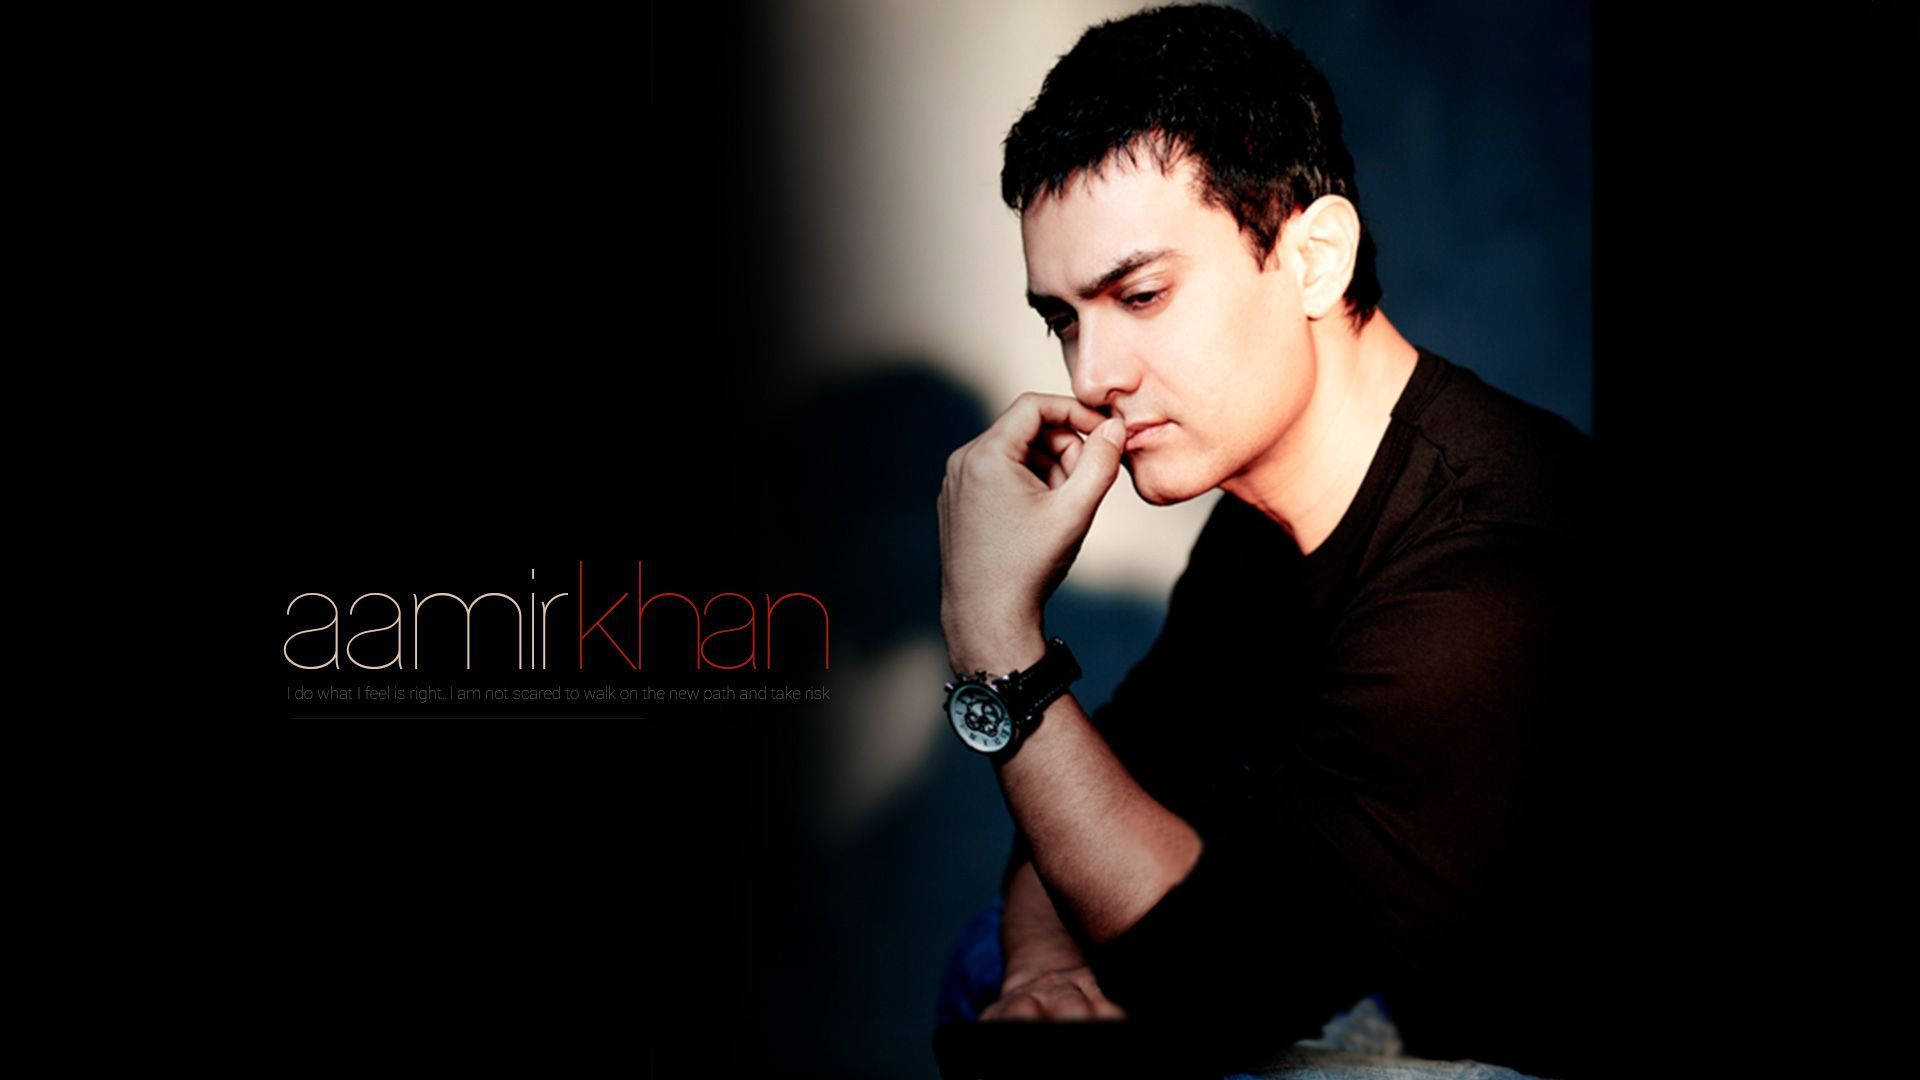 Aamirkhan Im Dunkeln. Wallpaper